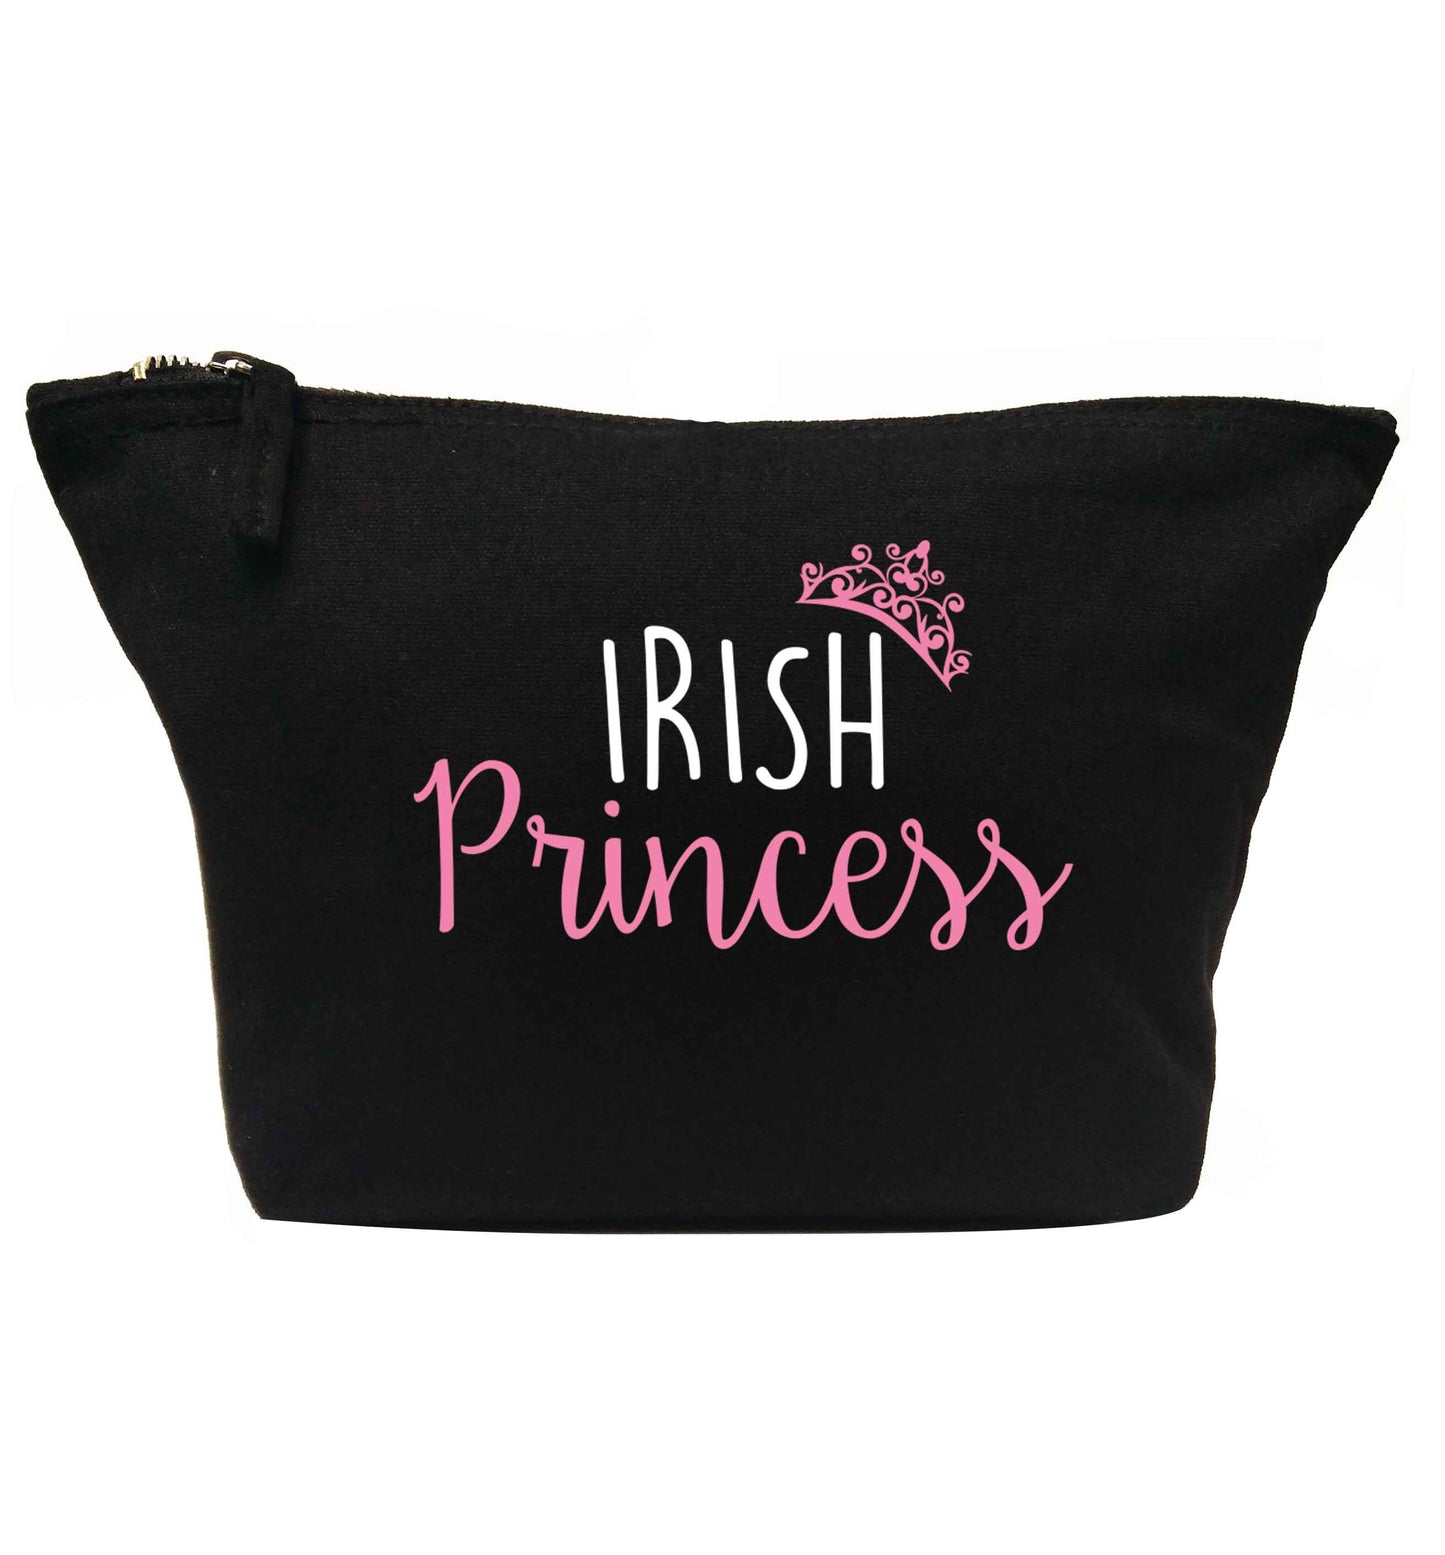 Irish princess | Makeup / wash bag